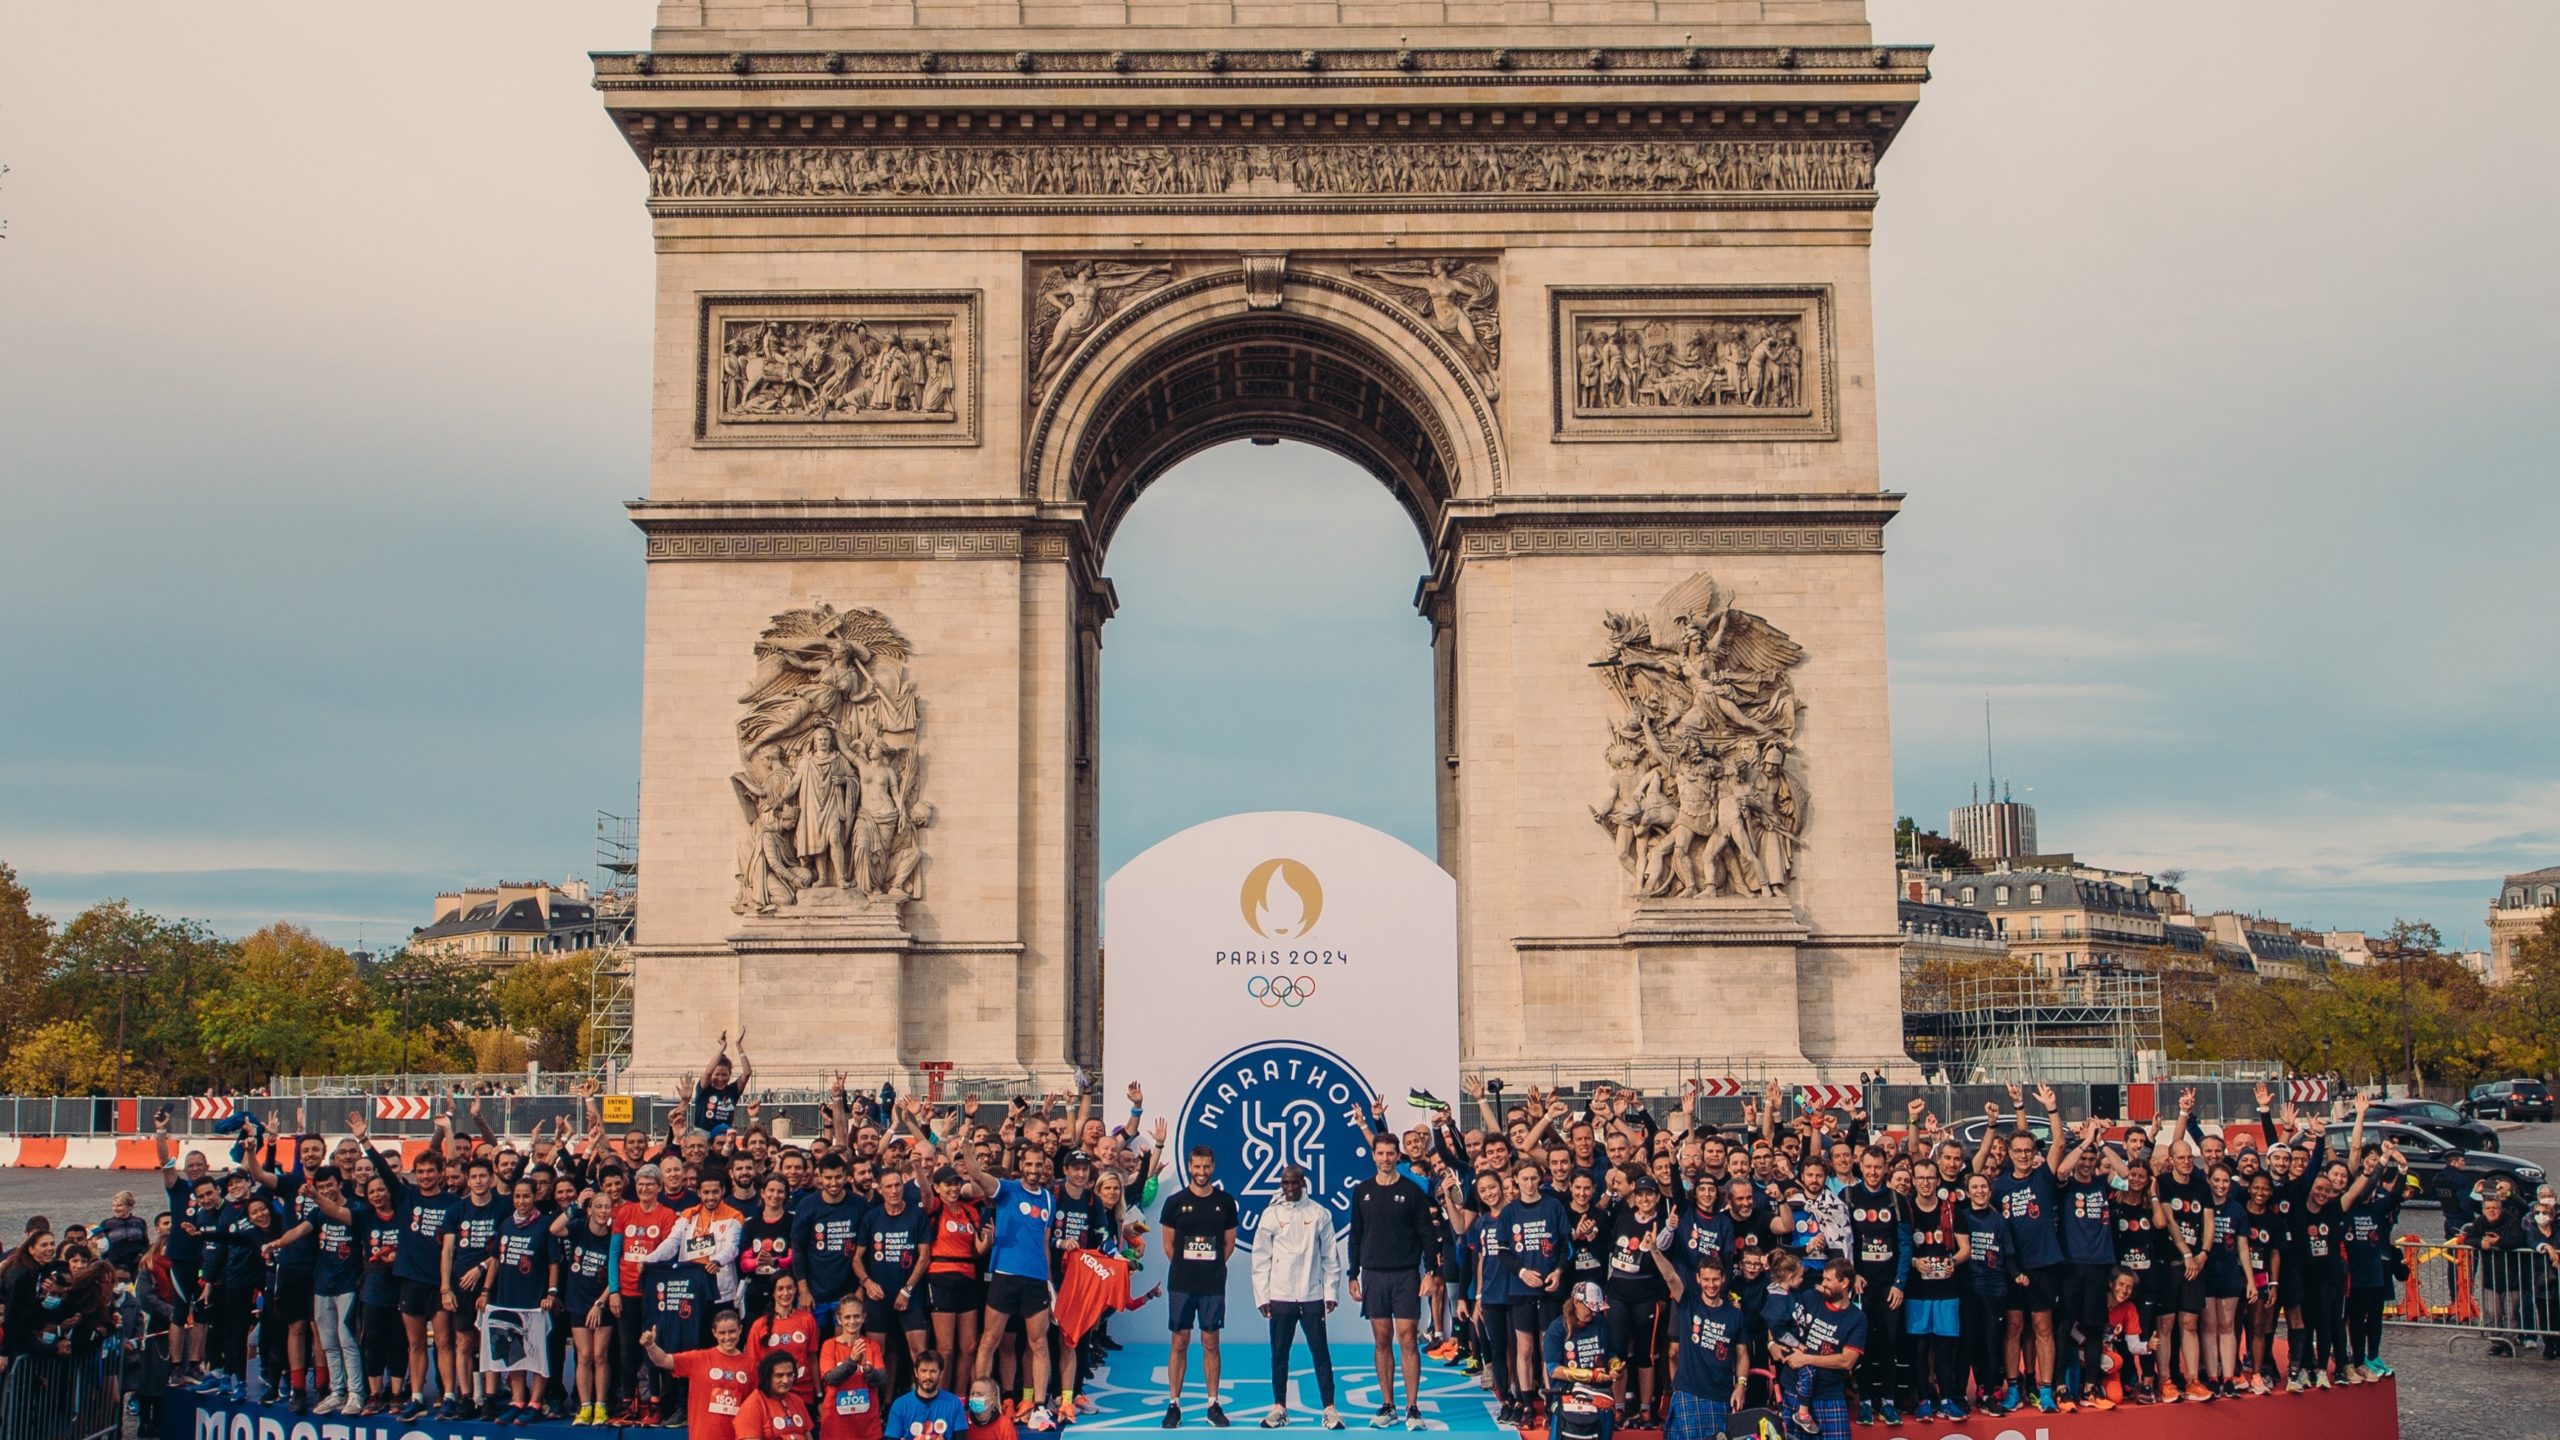 Chama olímpica de Paris'2024 vai começar percurso francês em